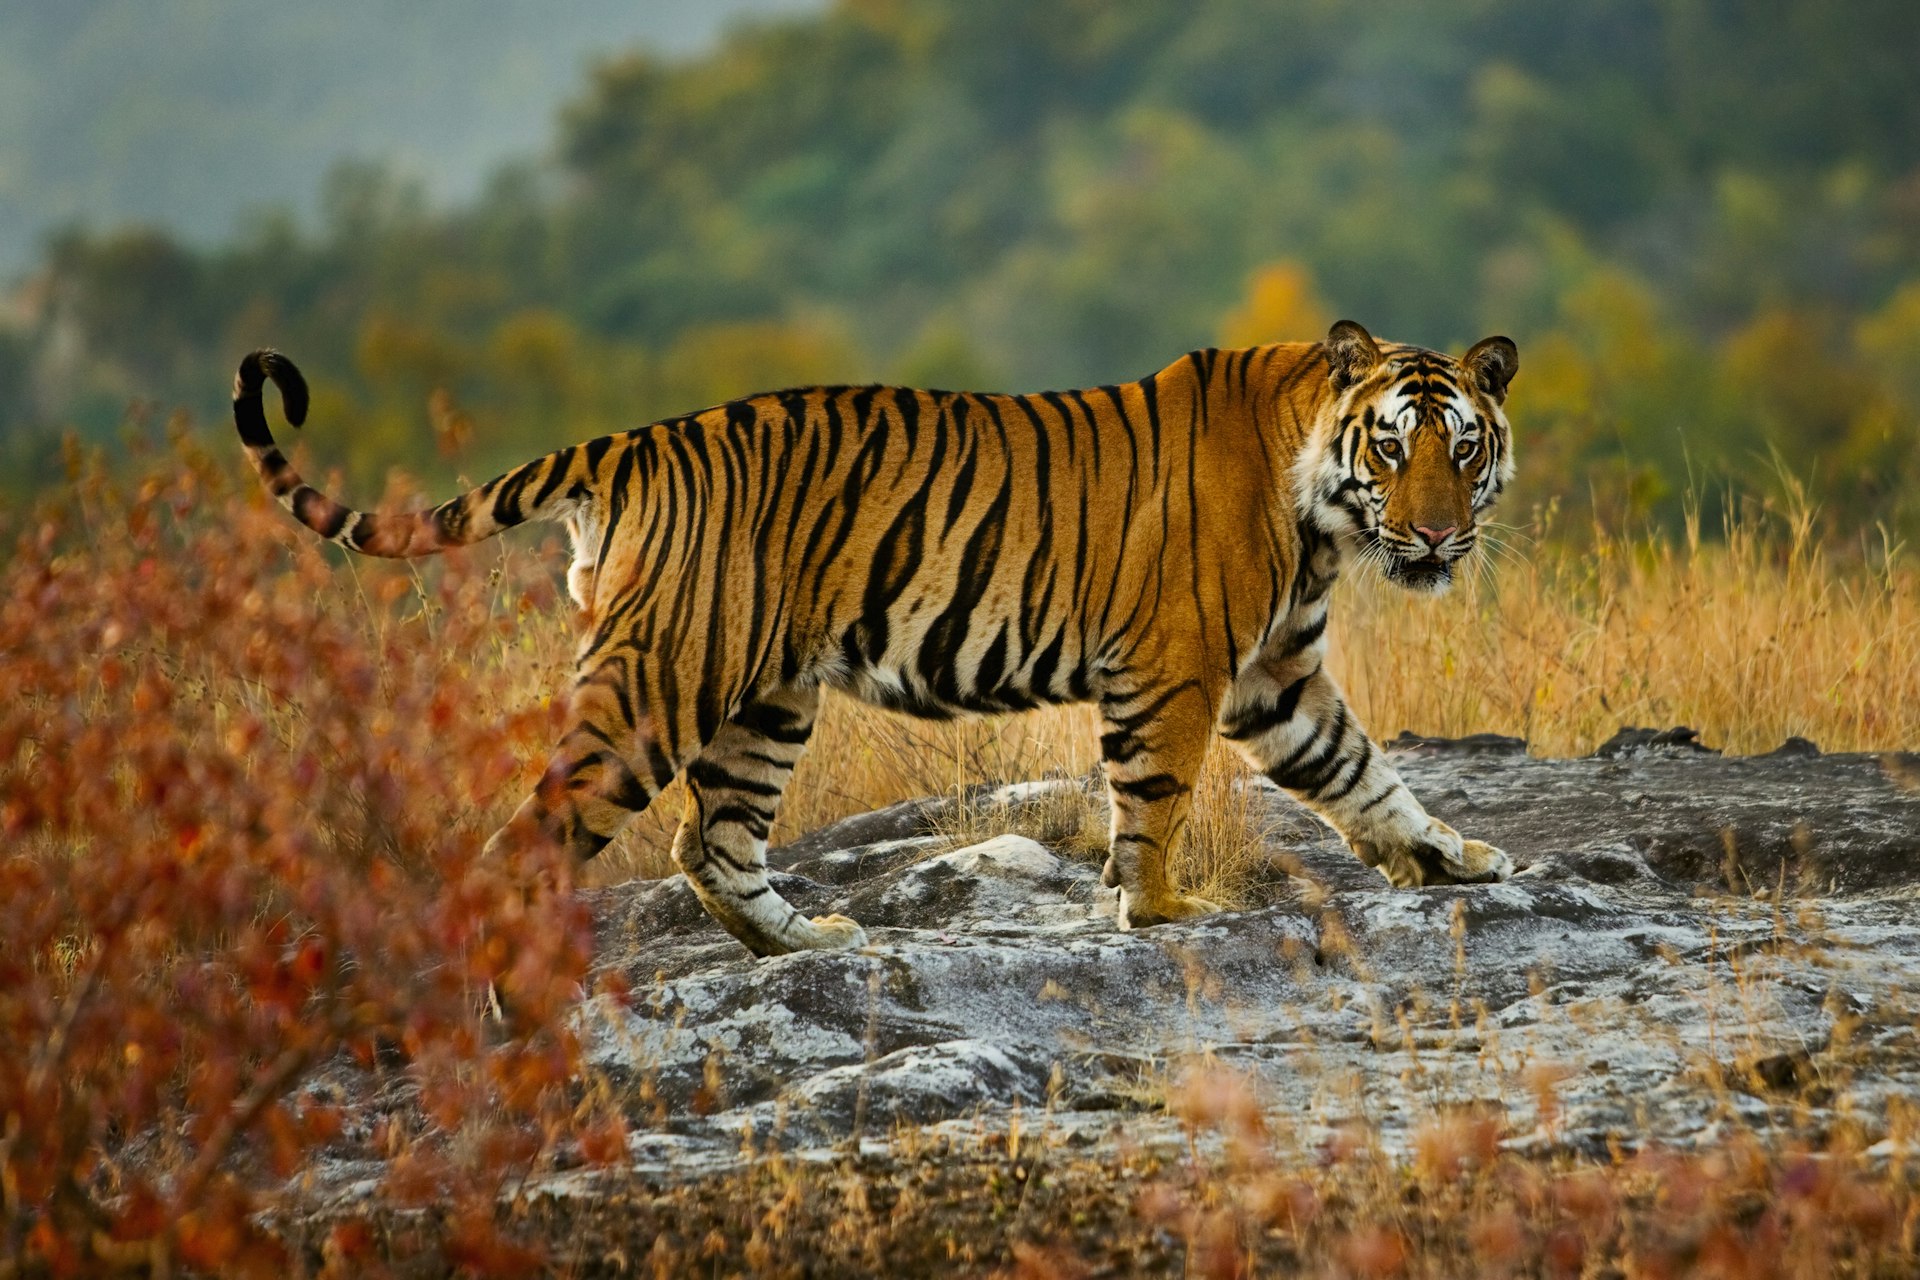 A large tiger walking over rocks in Bandhavgarh National Park